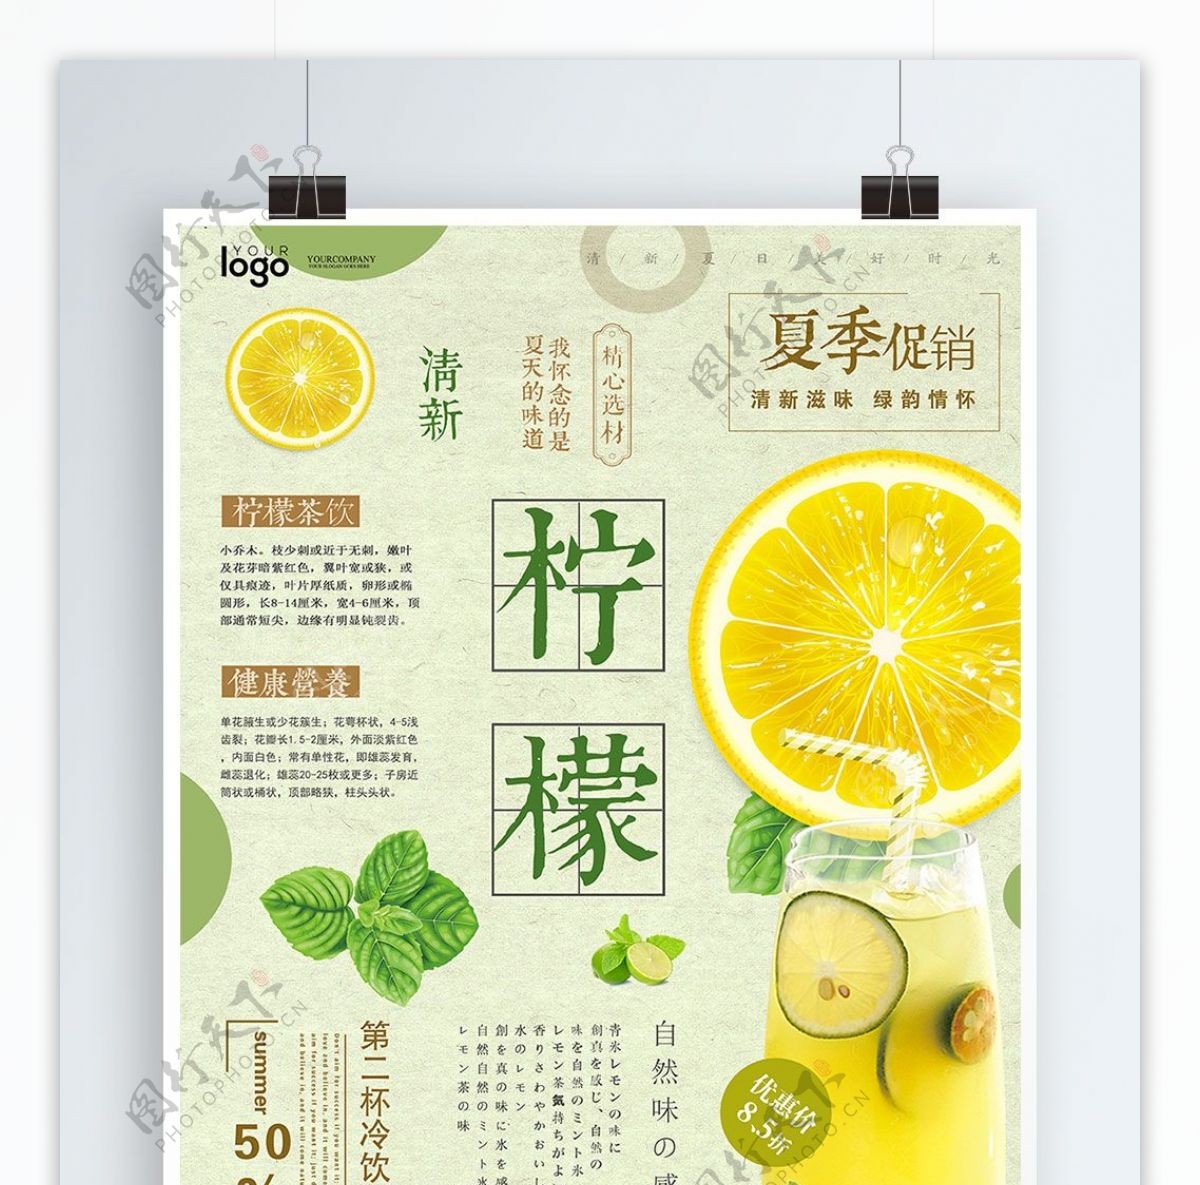 夏季清新精美文字排版清凉柠檬创意海报设计